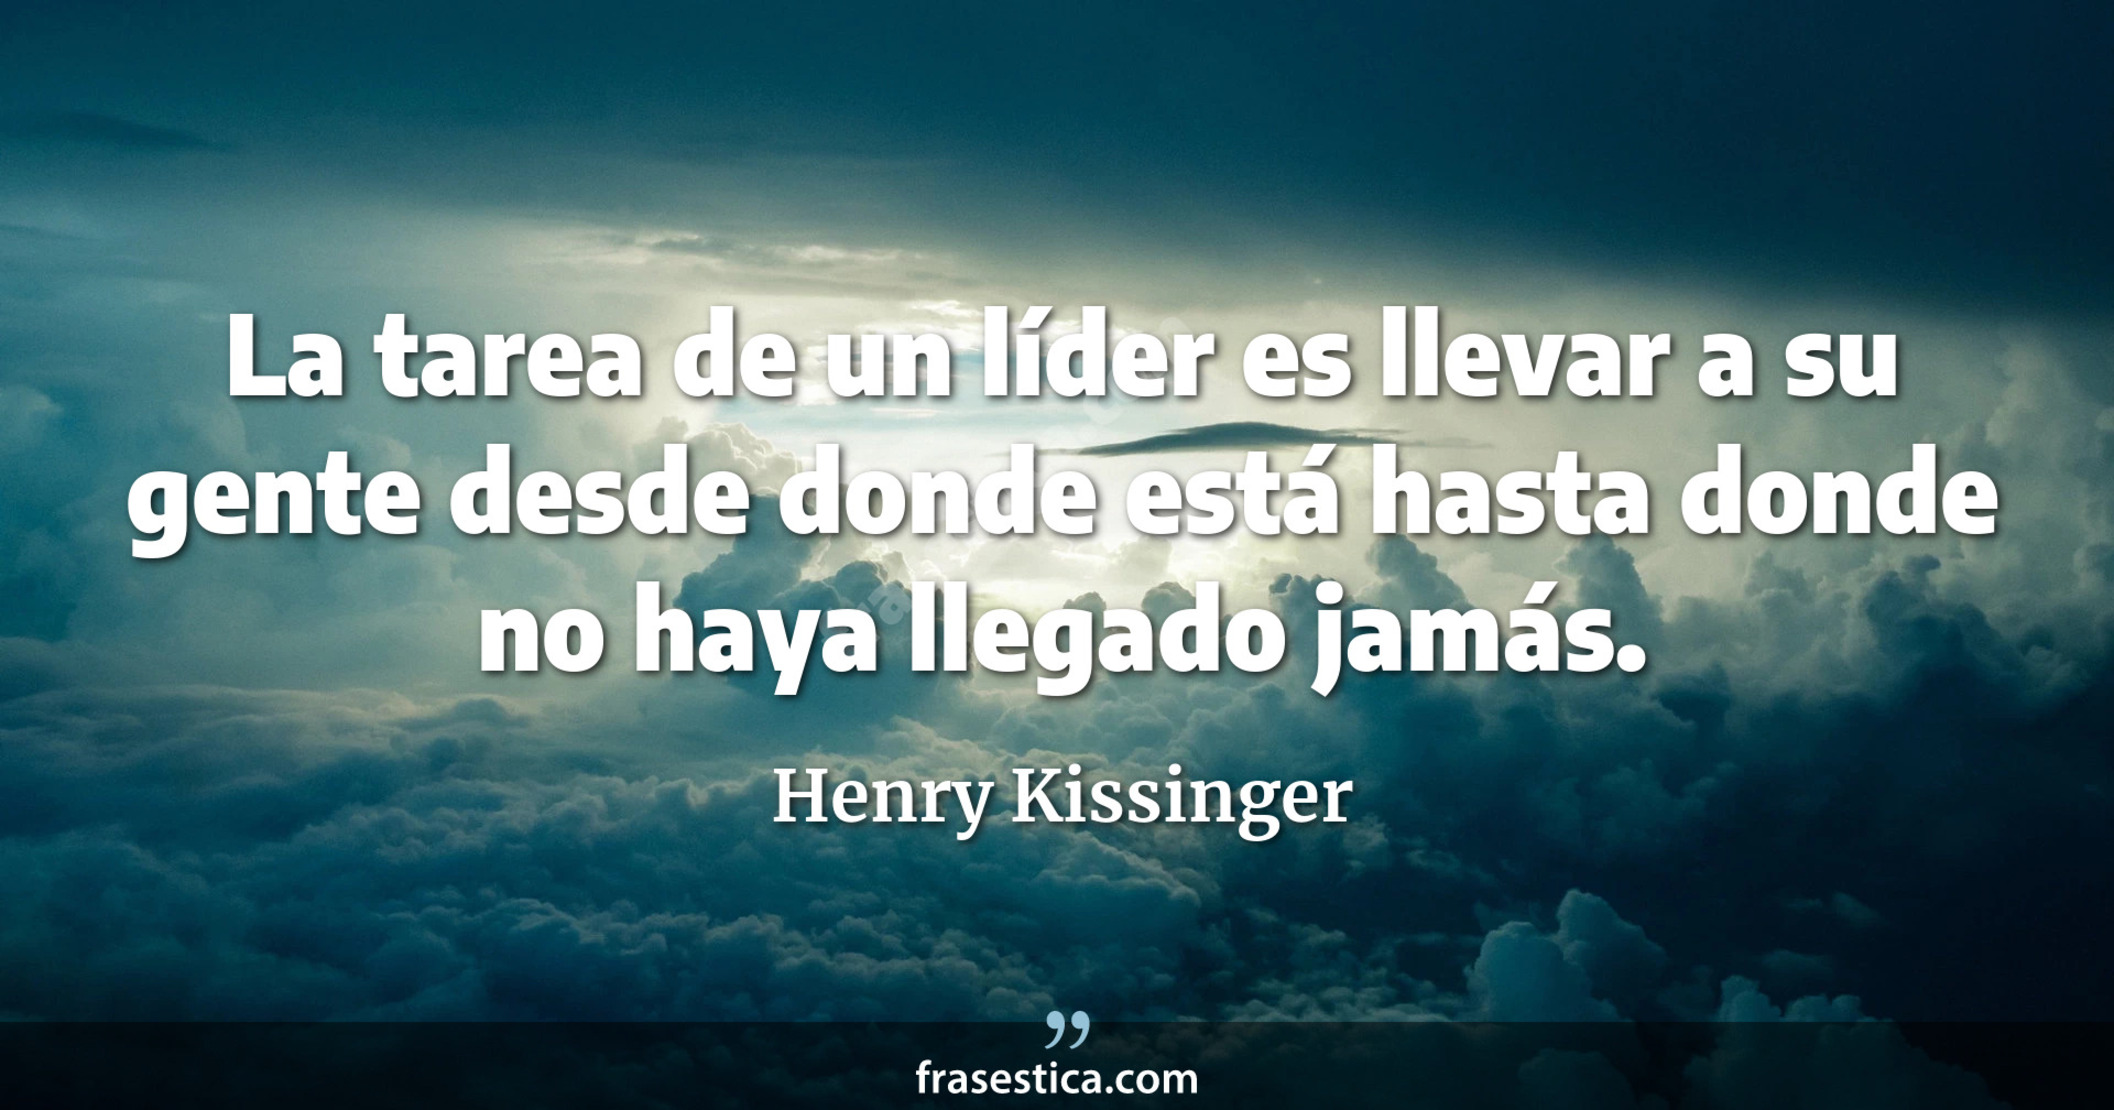 La tarea de un líder es llevar a su gente desde donde está hasta donde no haya llegado jamás. - Henry Kissinger